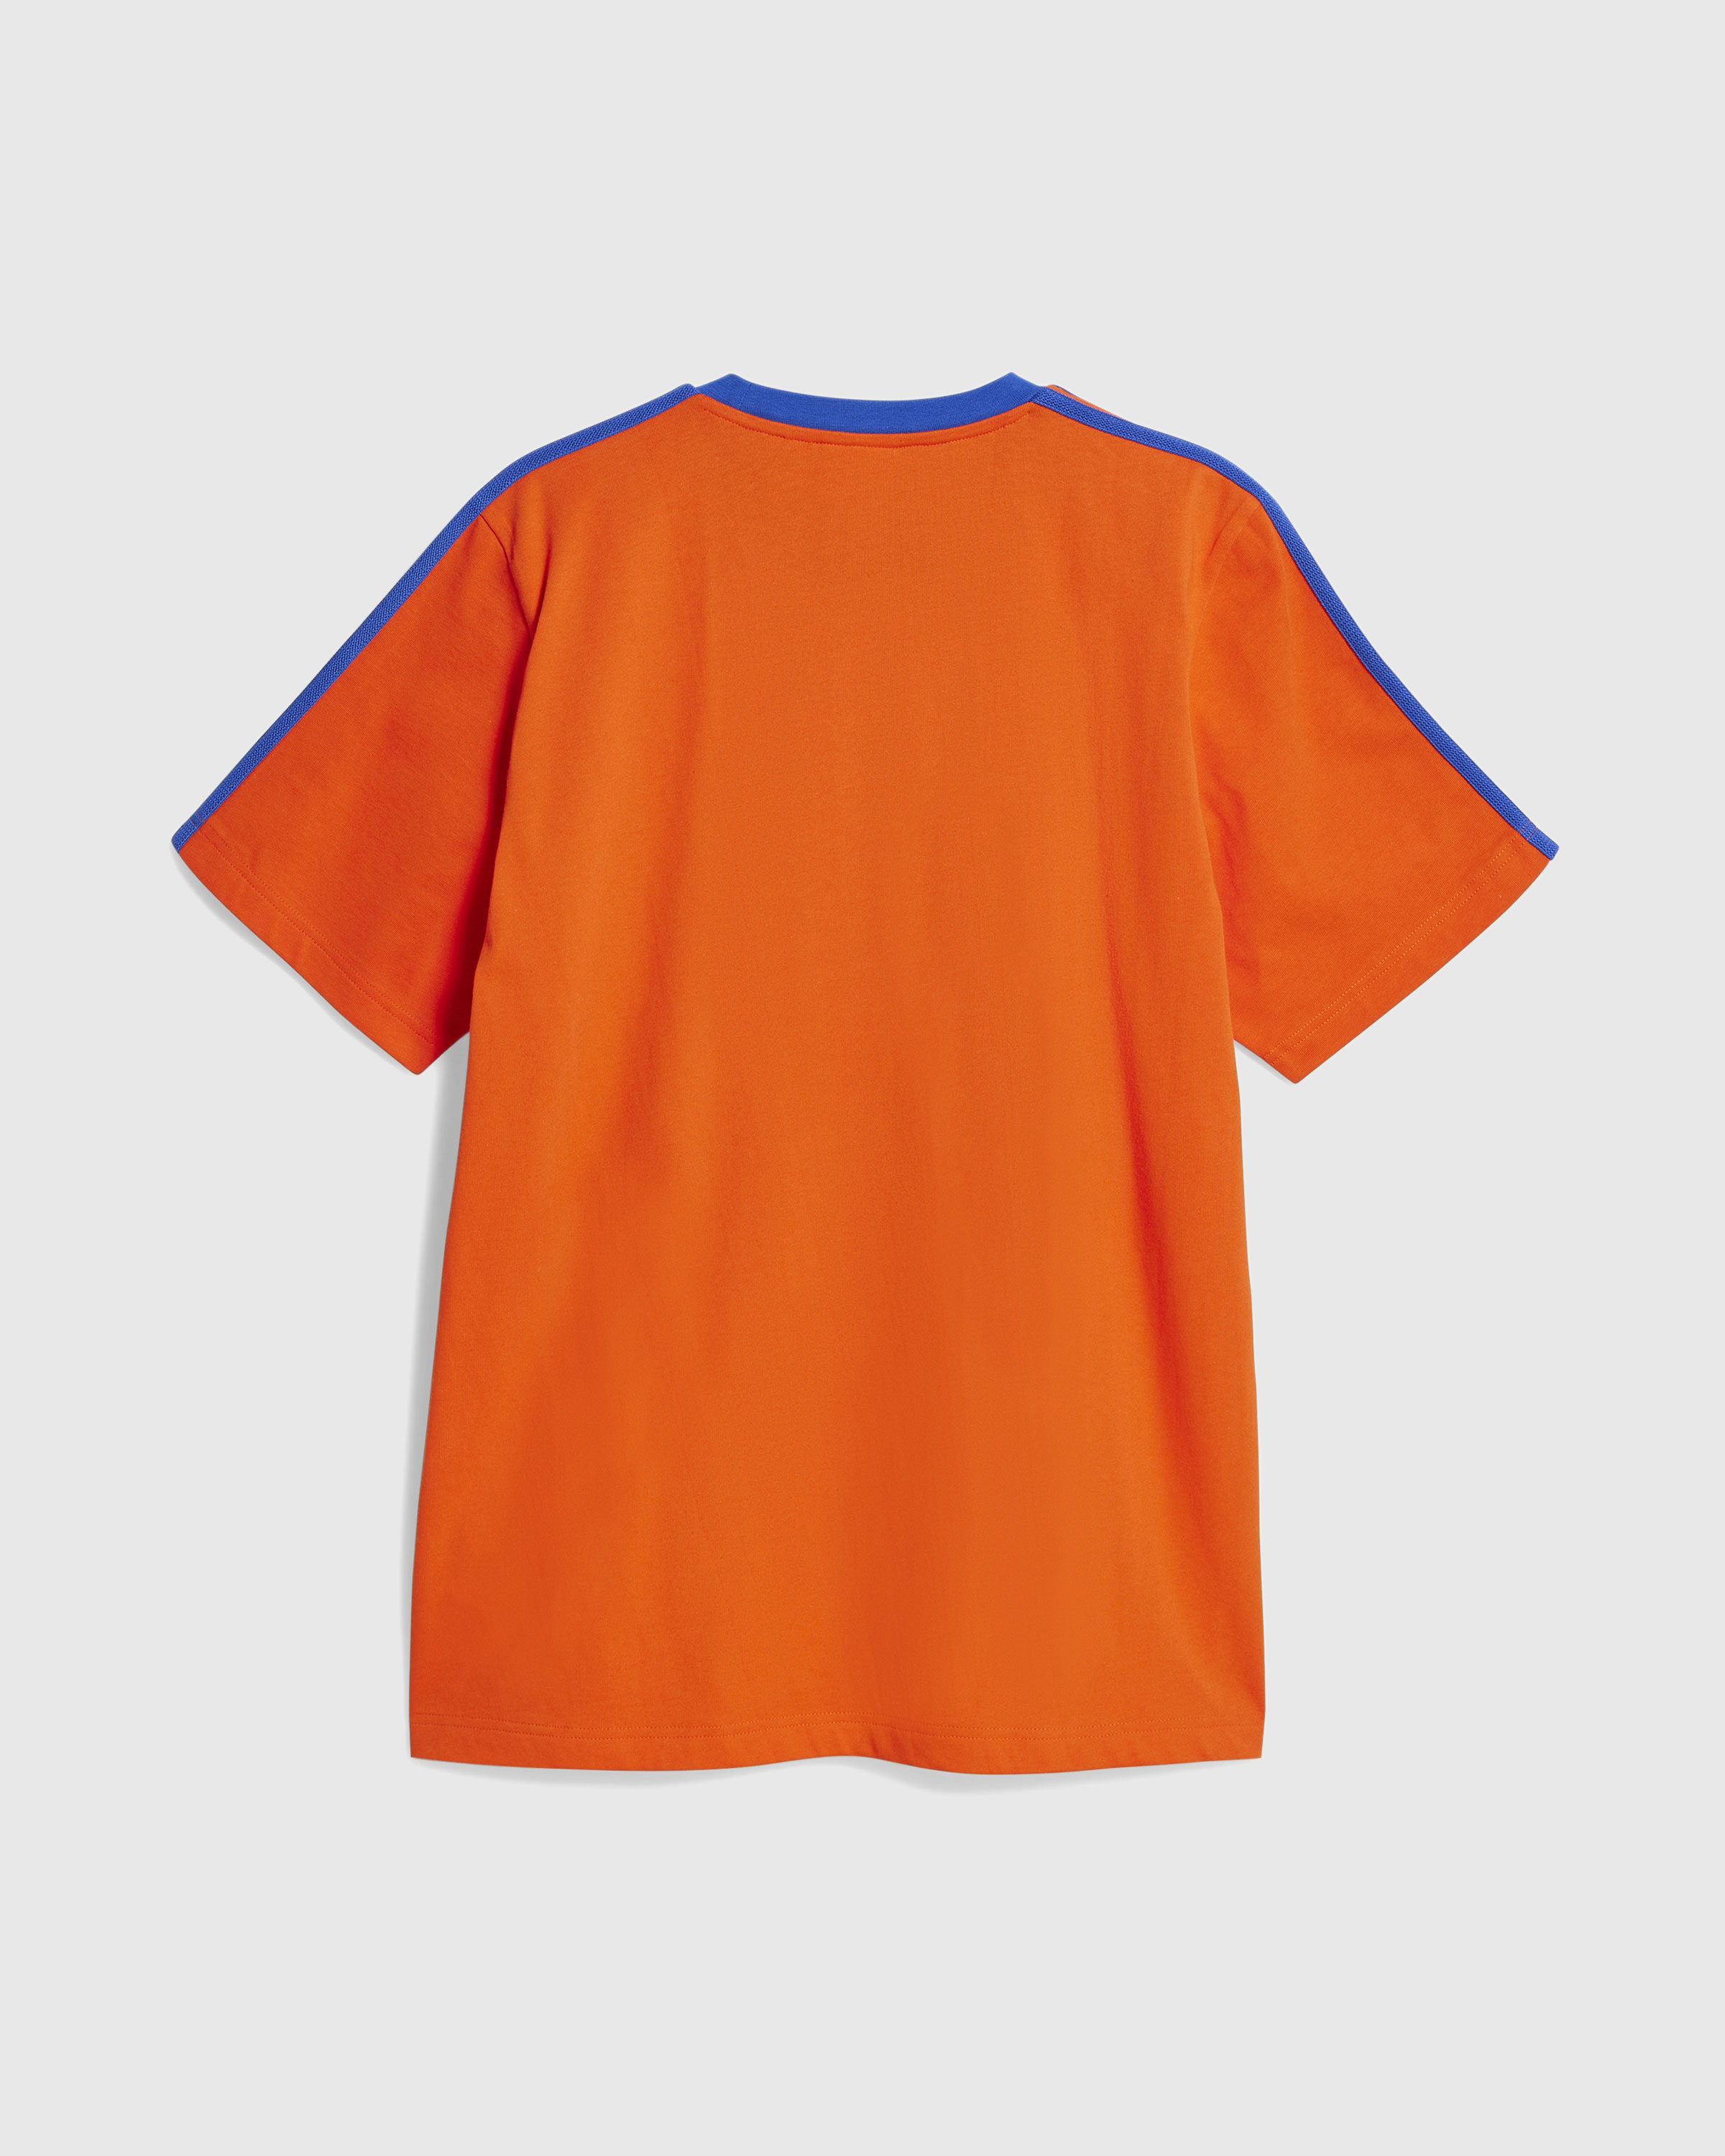 Adidas x Wales Bonner – Short-Sleeve Tee Bold Orange/Team Royal Blue - T-Shirts - Orange - Image 4